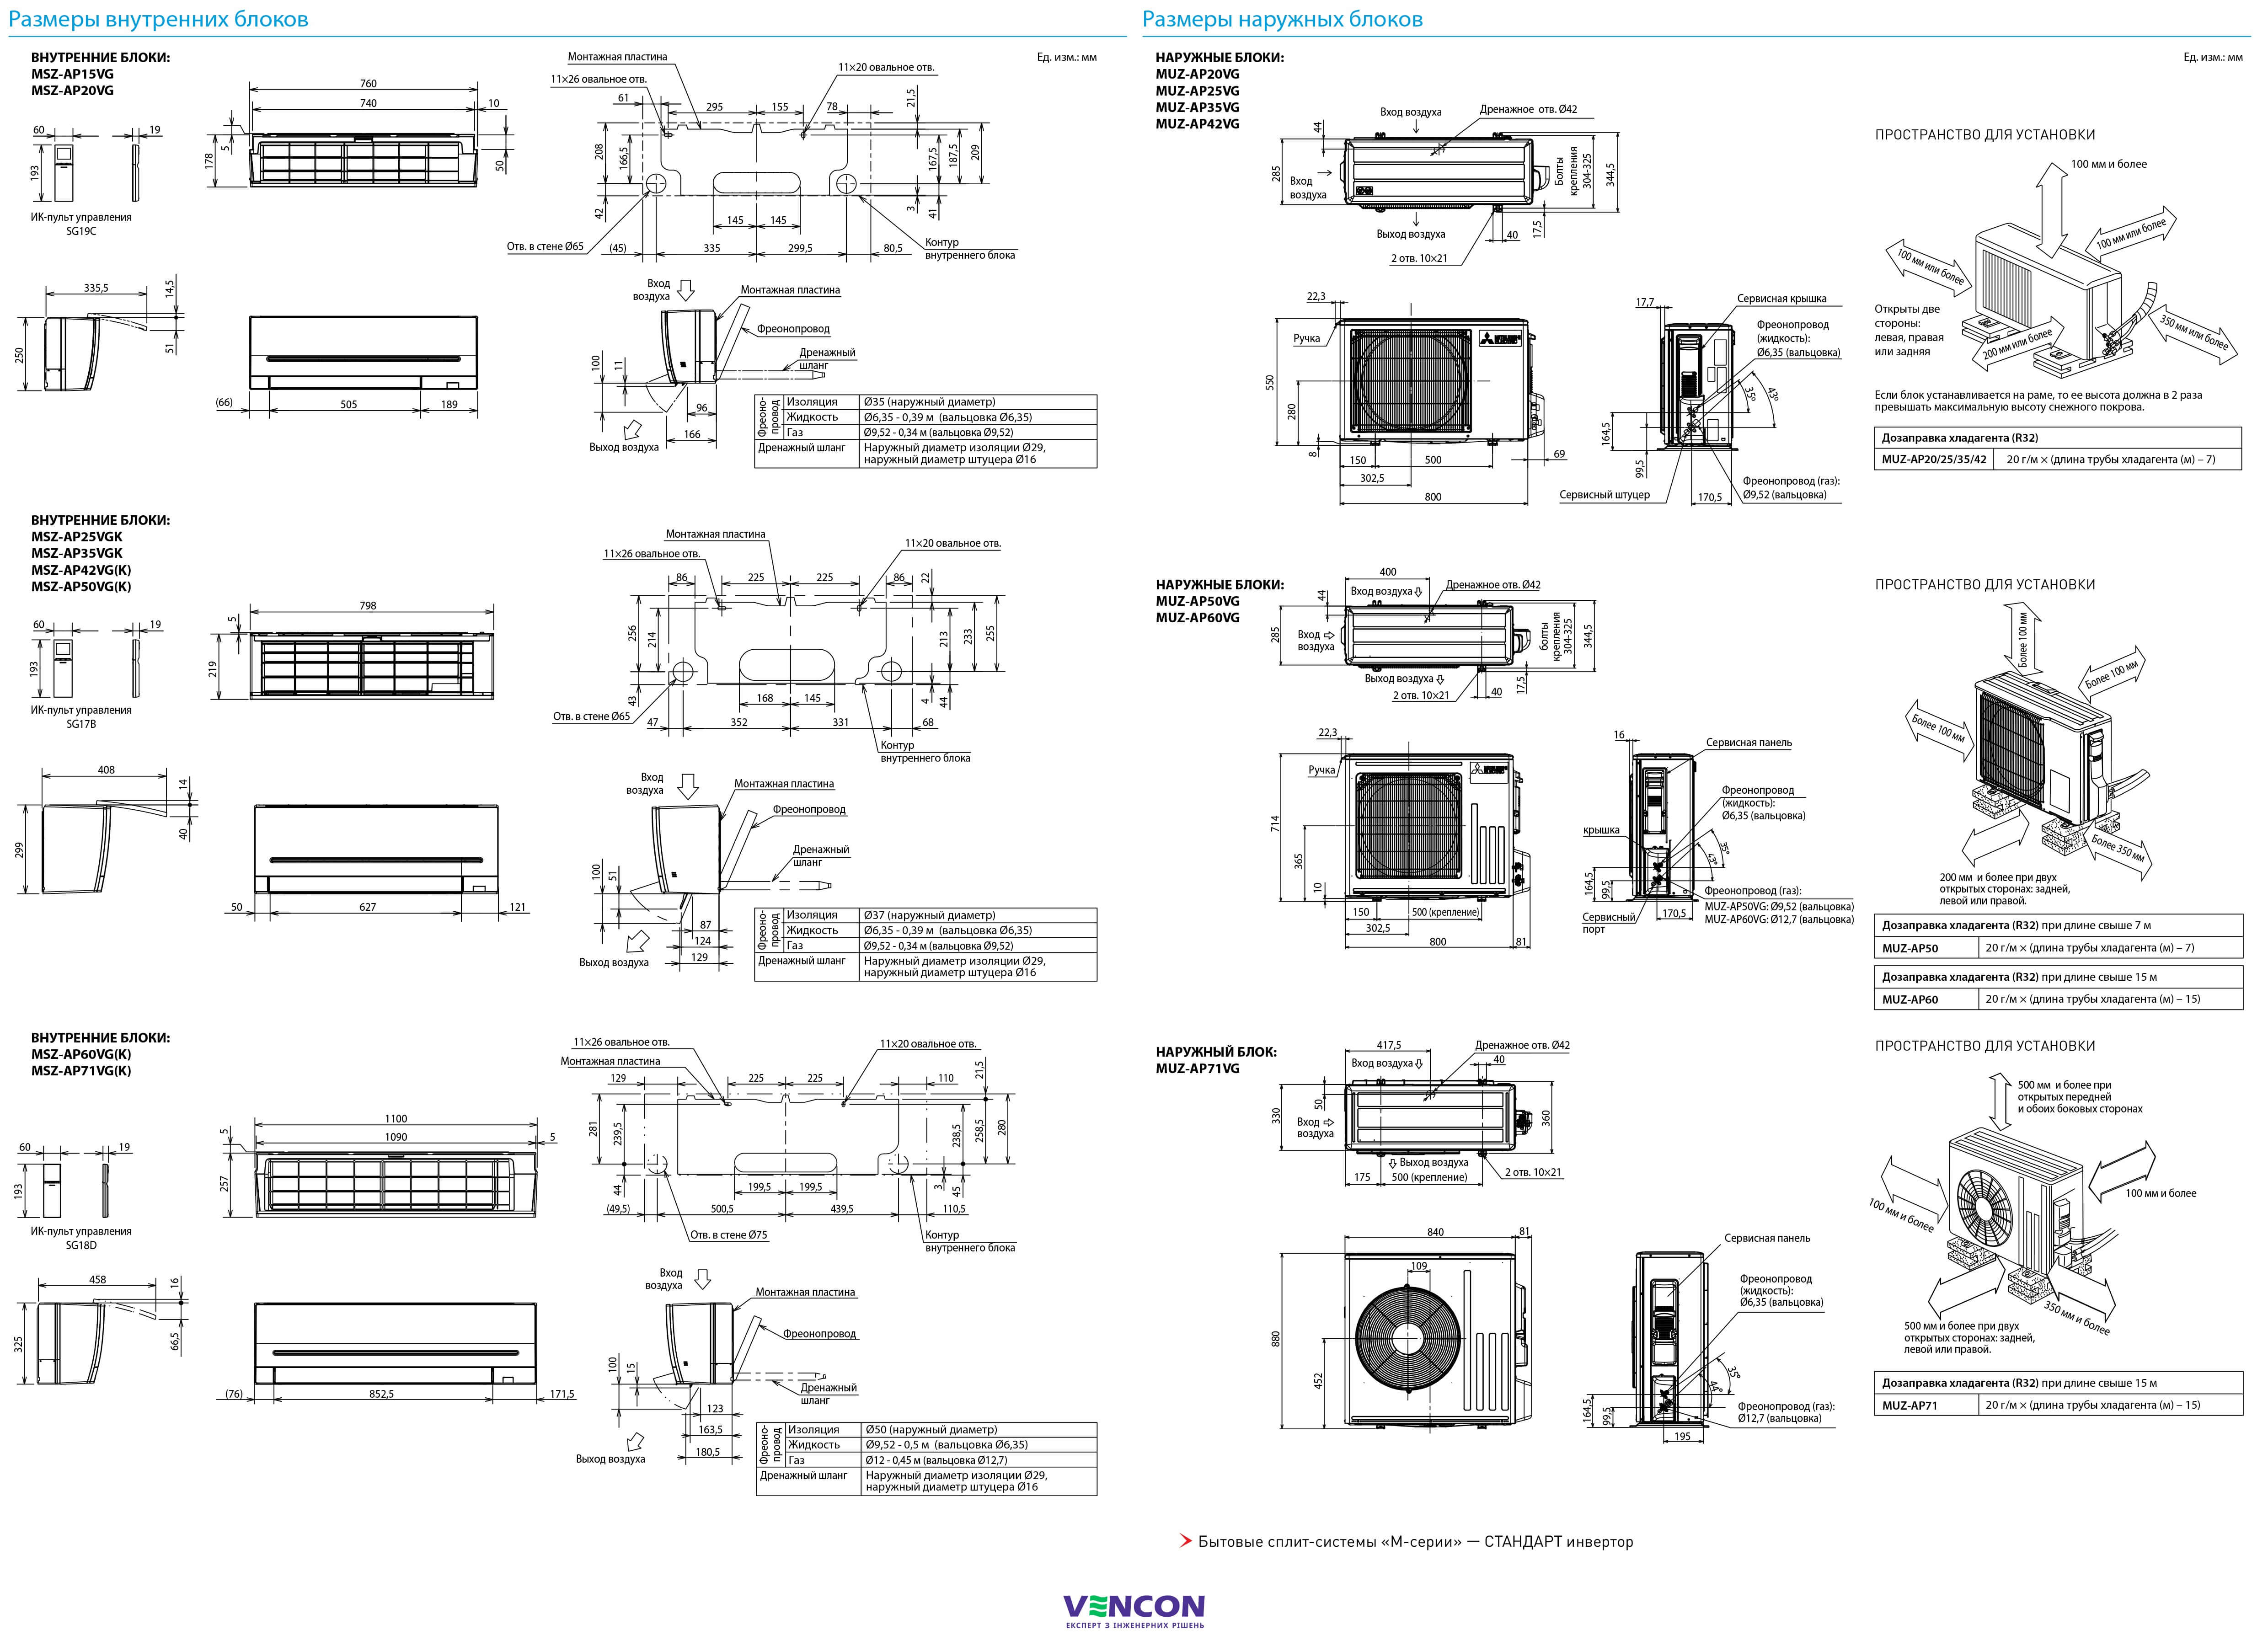 Mitsubishi Electric Standard Inverter MSZ-AP20VG/MUZ-AP20VG Габаритні розміри